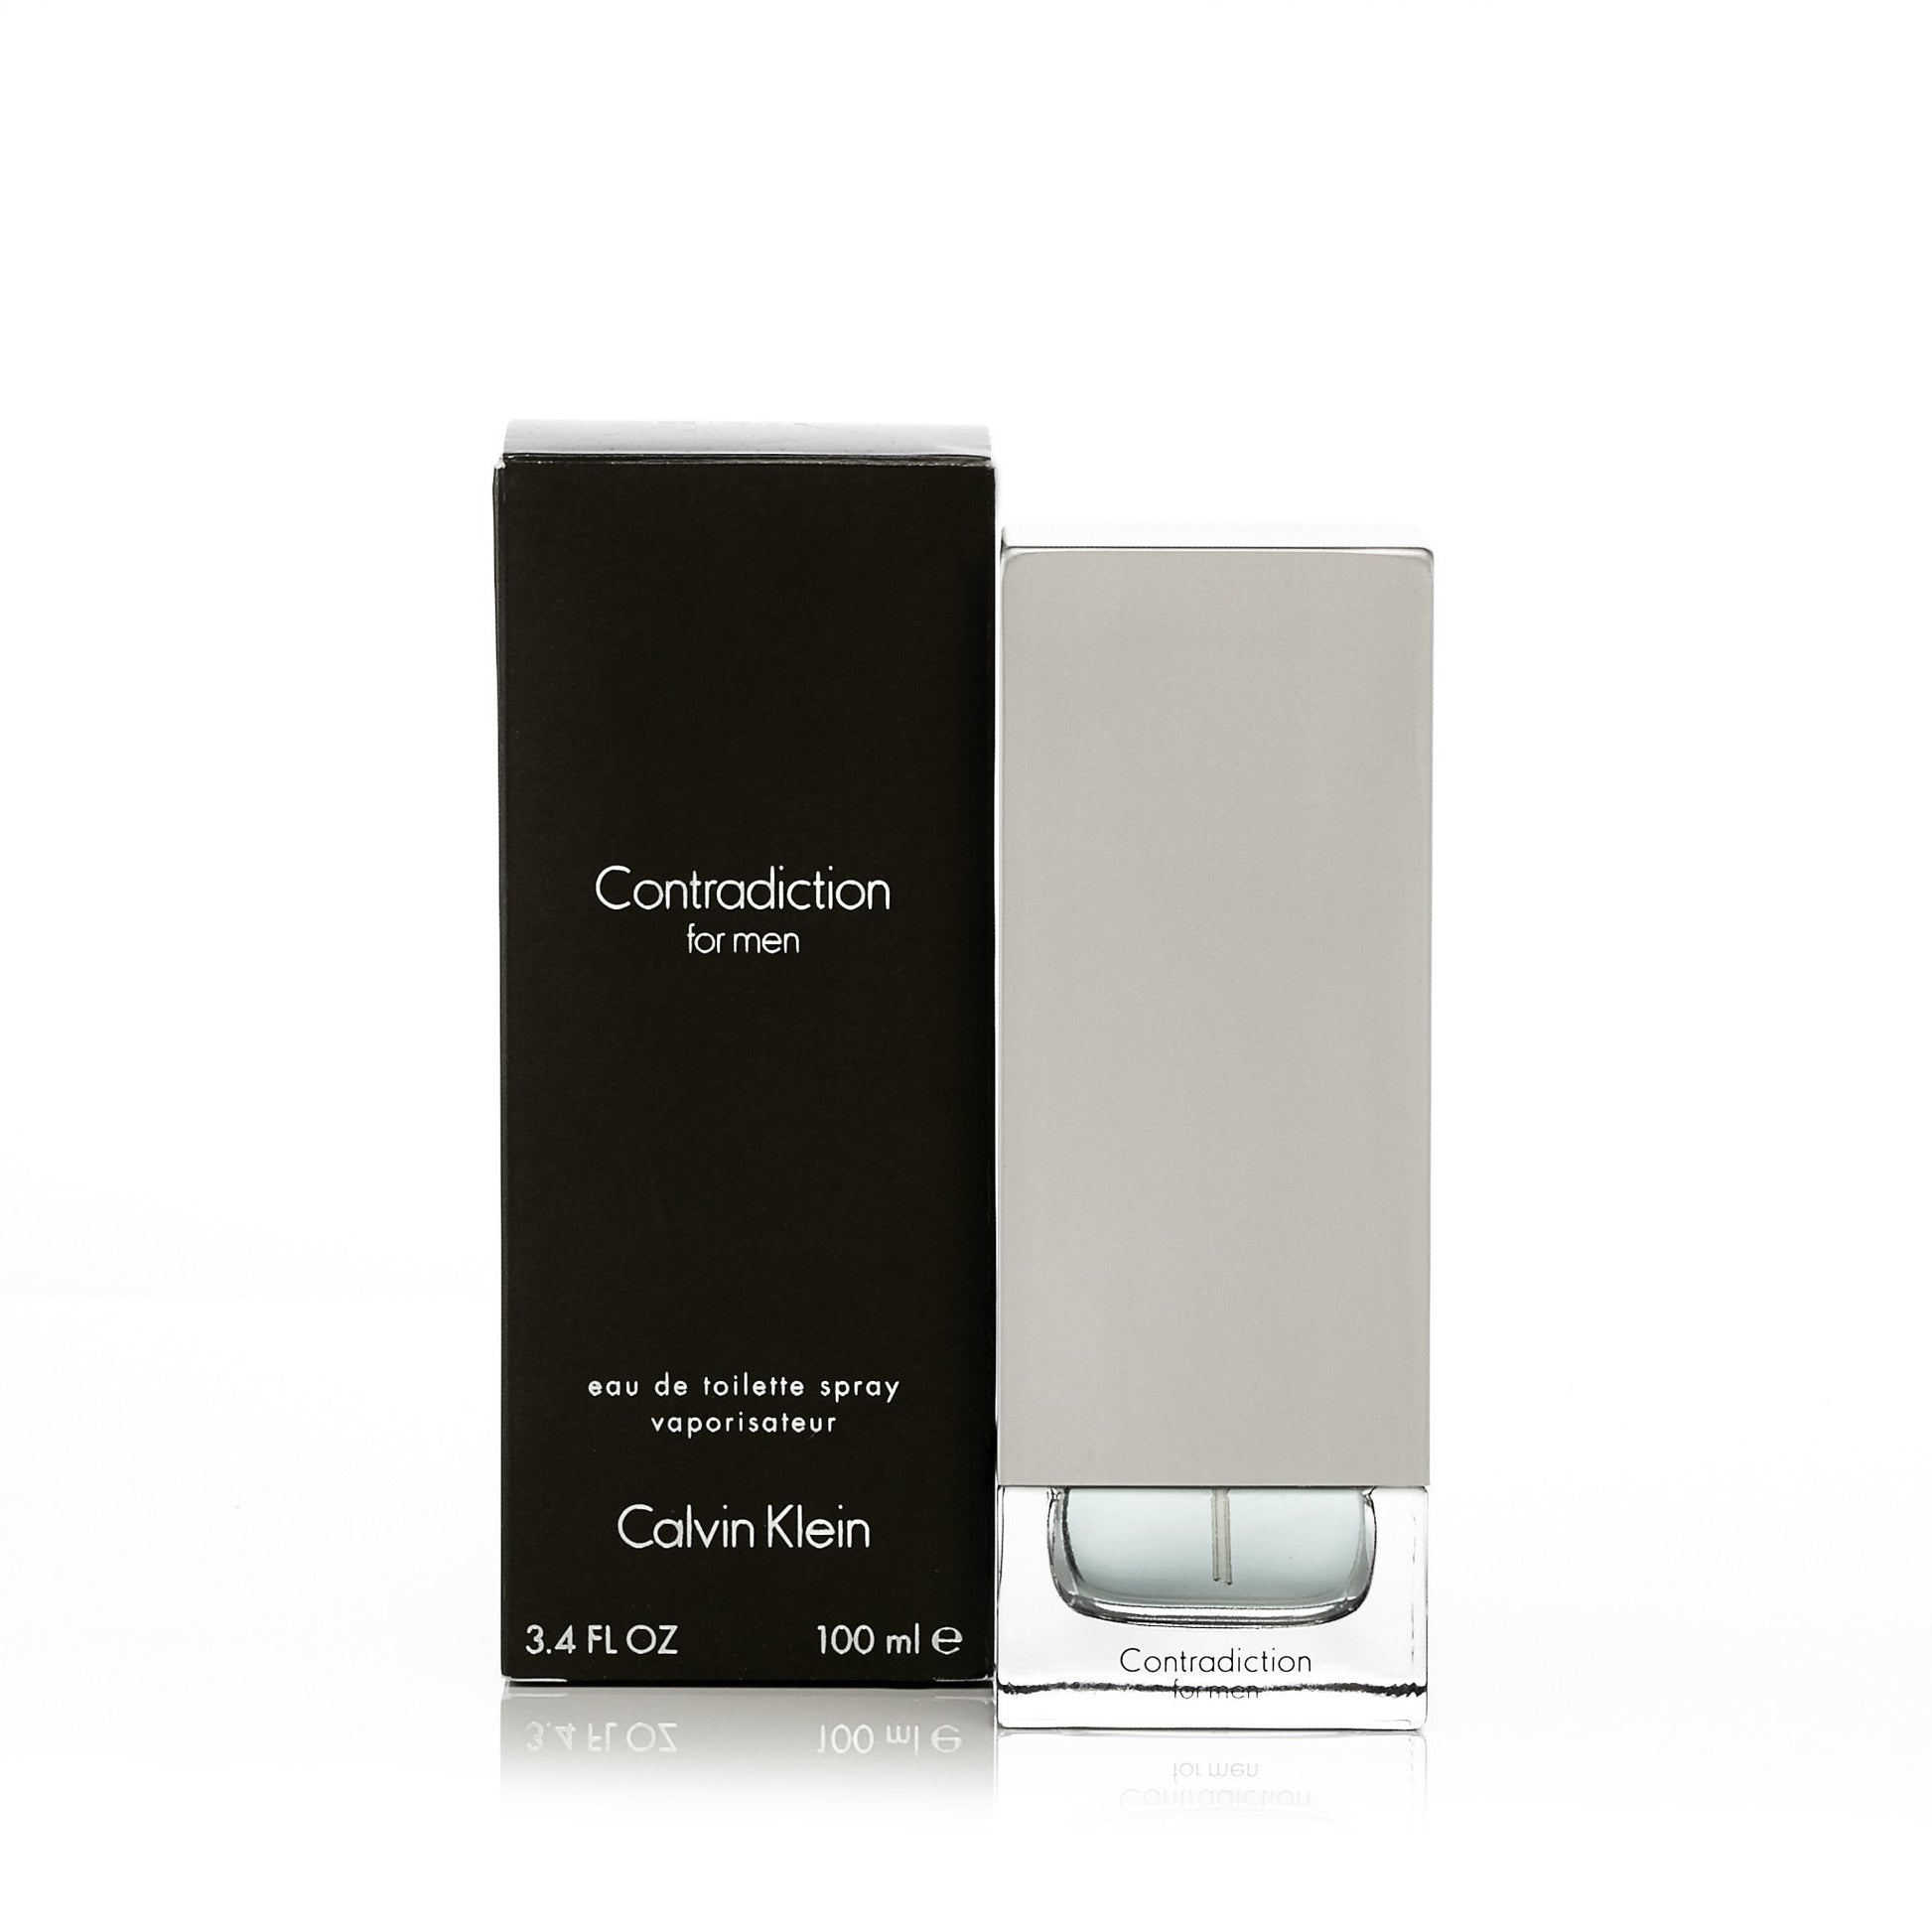 Contradiction Eau de Toilette Spray for Men by Calvin Klein 3.4 oz. Click to open in modal